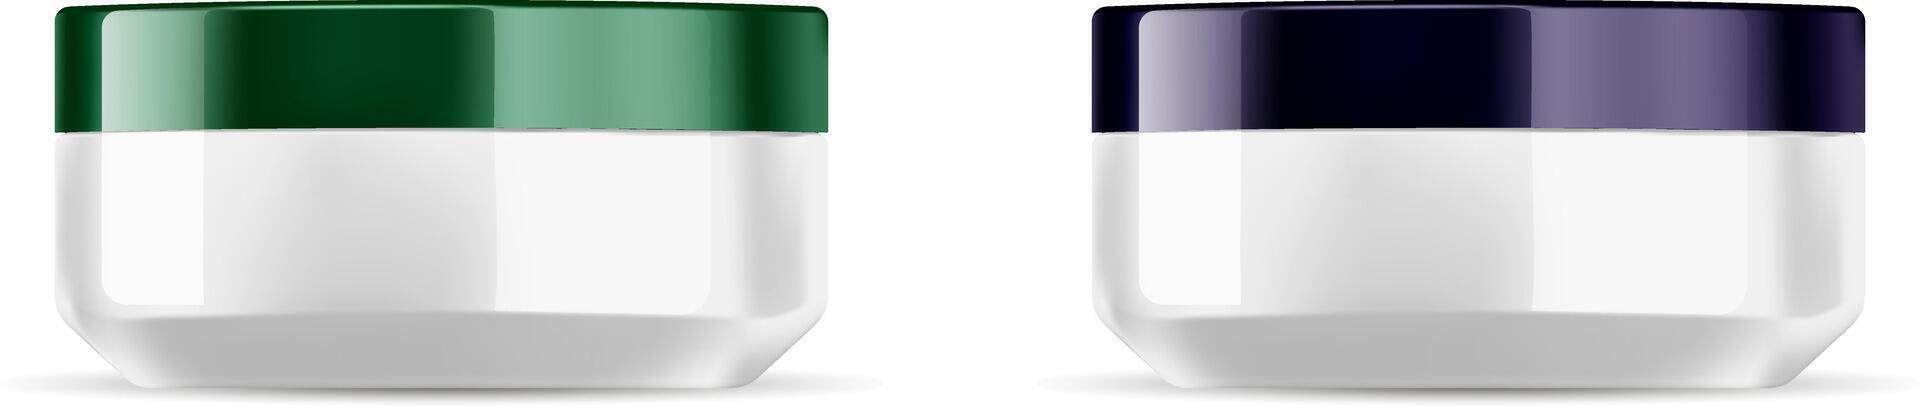 il giro cosmetico barattoli impostato con lucido verde e buio viola coperchi. bianca base contenitori modello per cosmetico panna, sale, polvere vettore